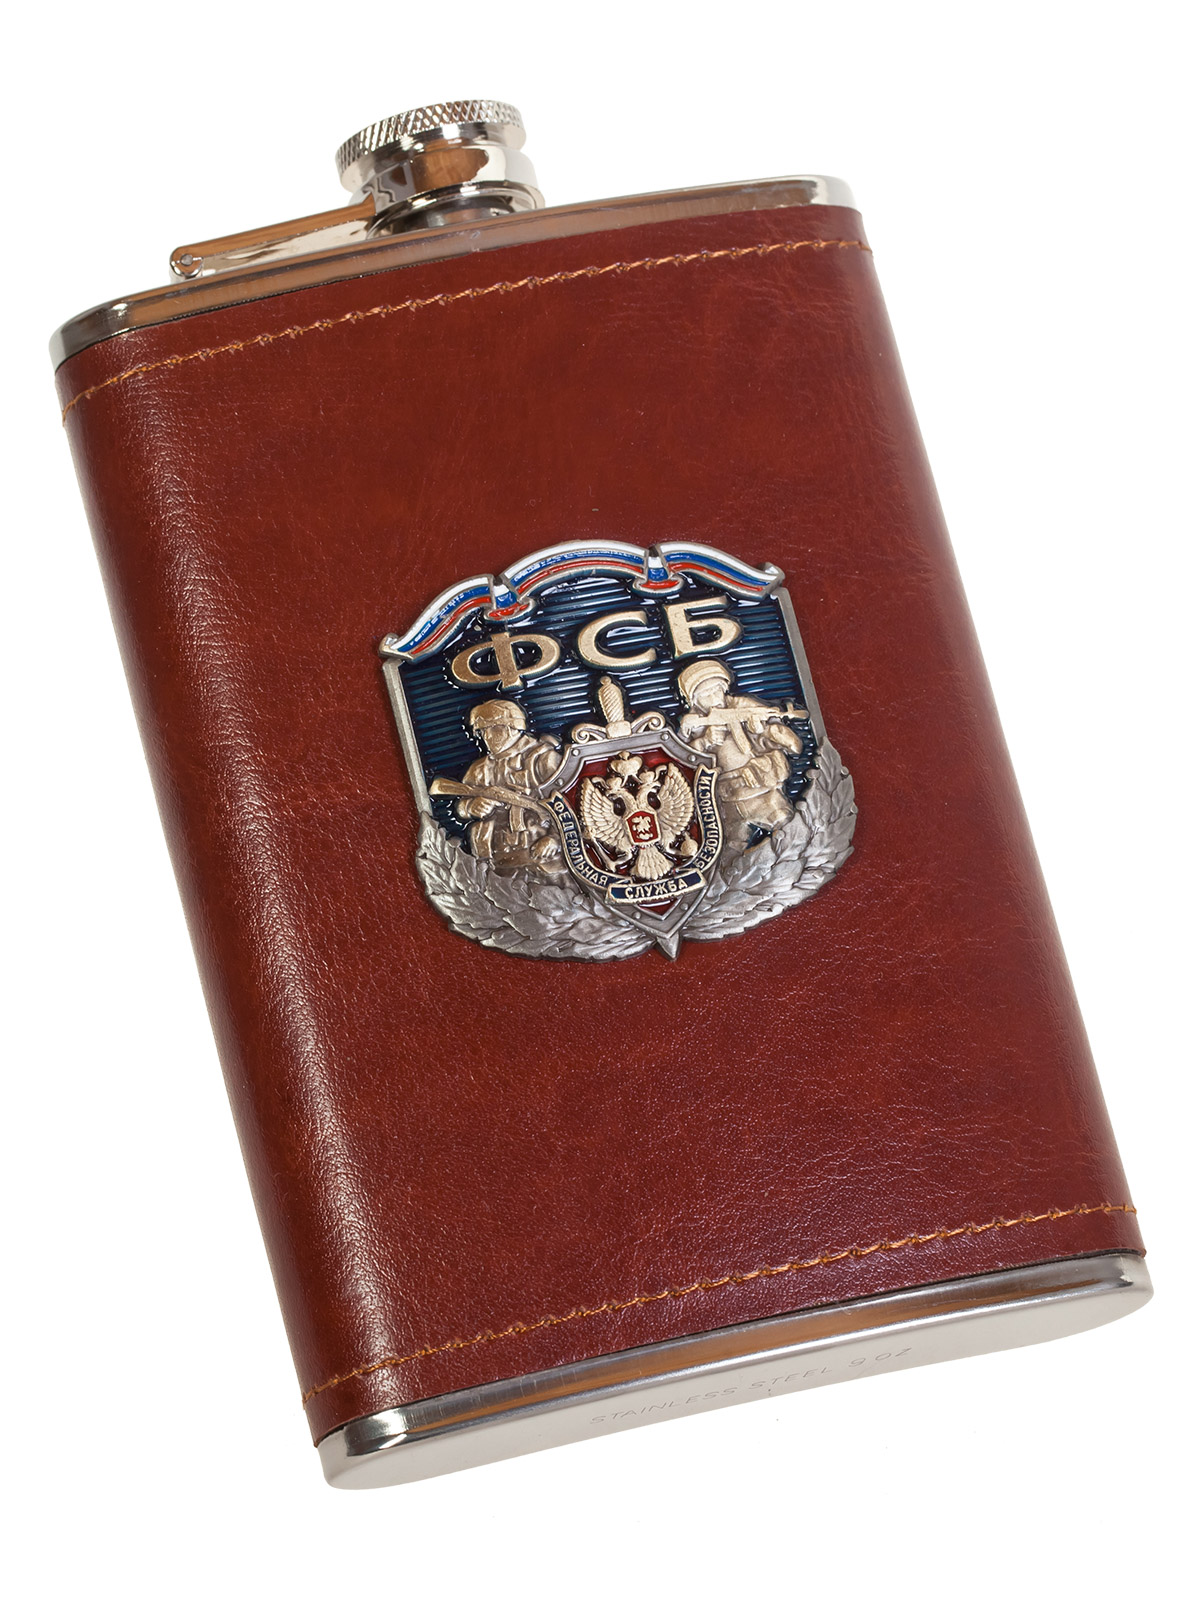 Эксклюзивная карманная фляжка с накладкой ФСБ 